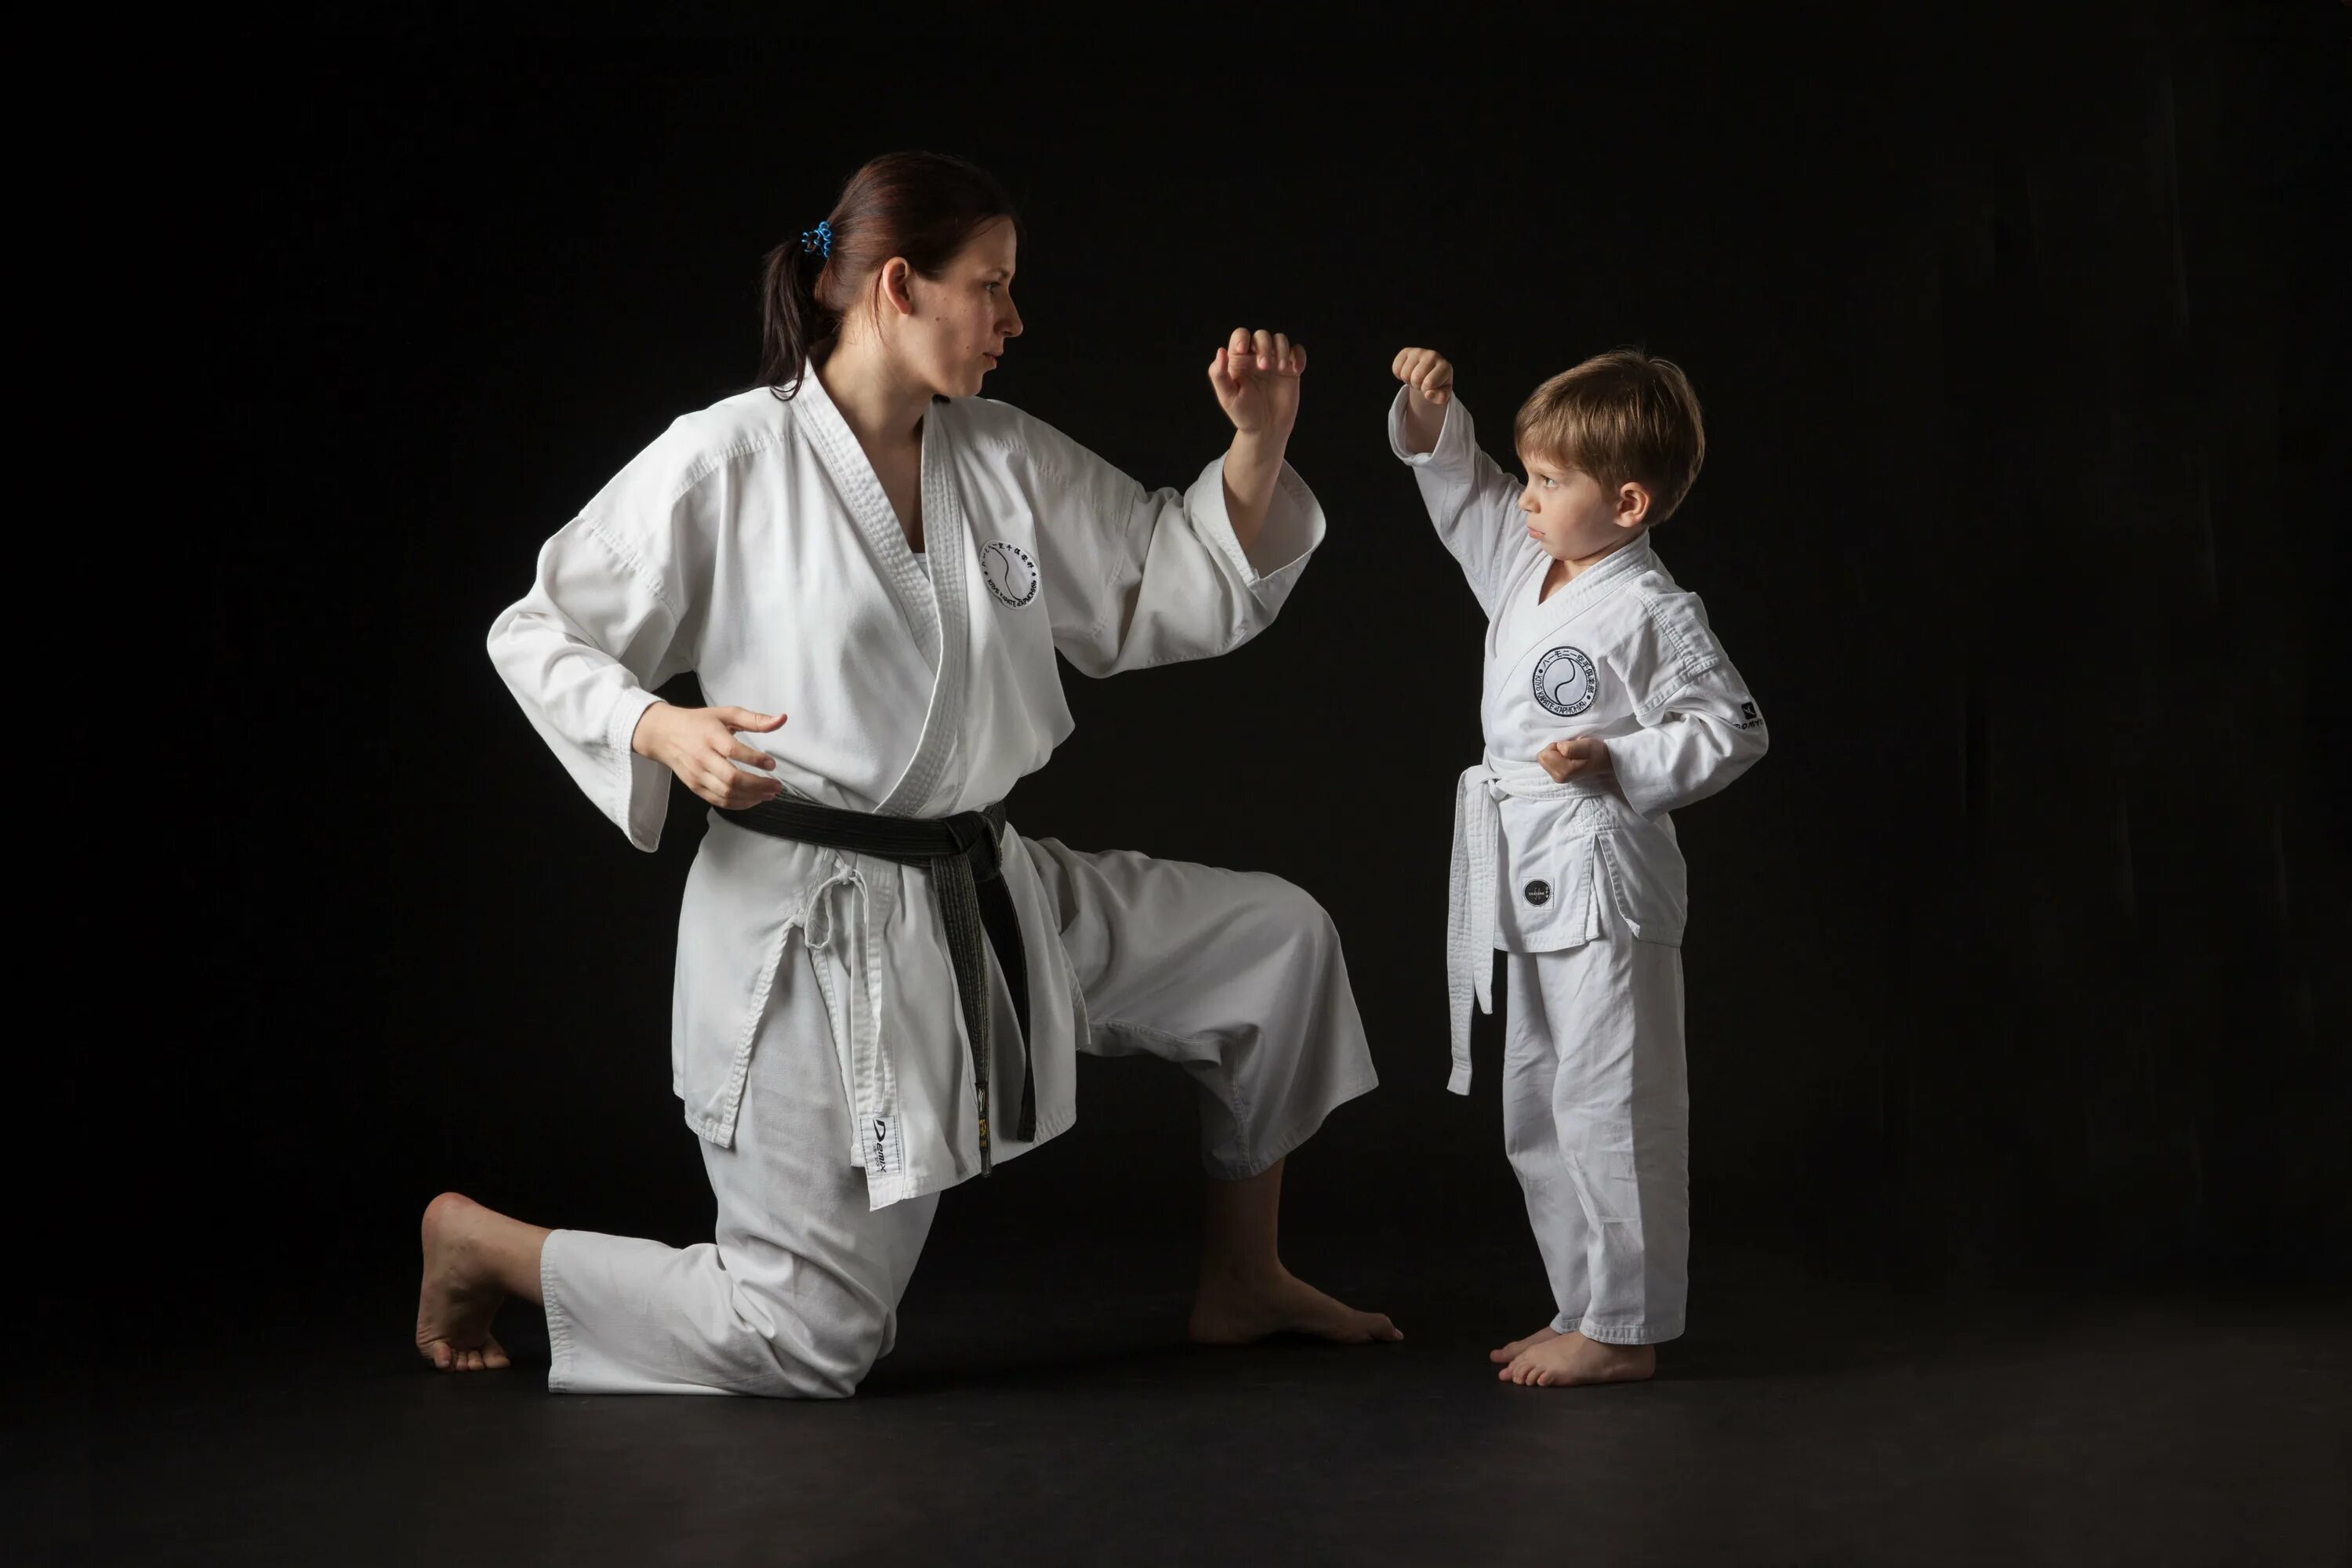 Детская карат. Боевого кимоно Шотокан. Каратэ дети. Спорт карате. Восточные единоборства для детей.